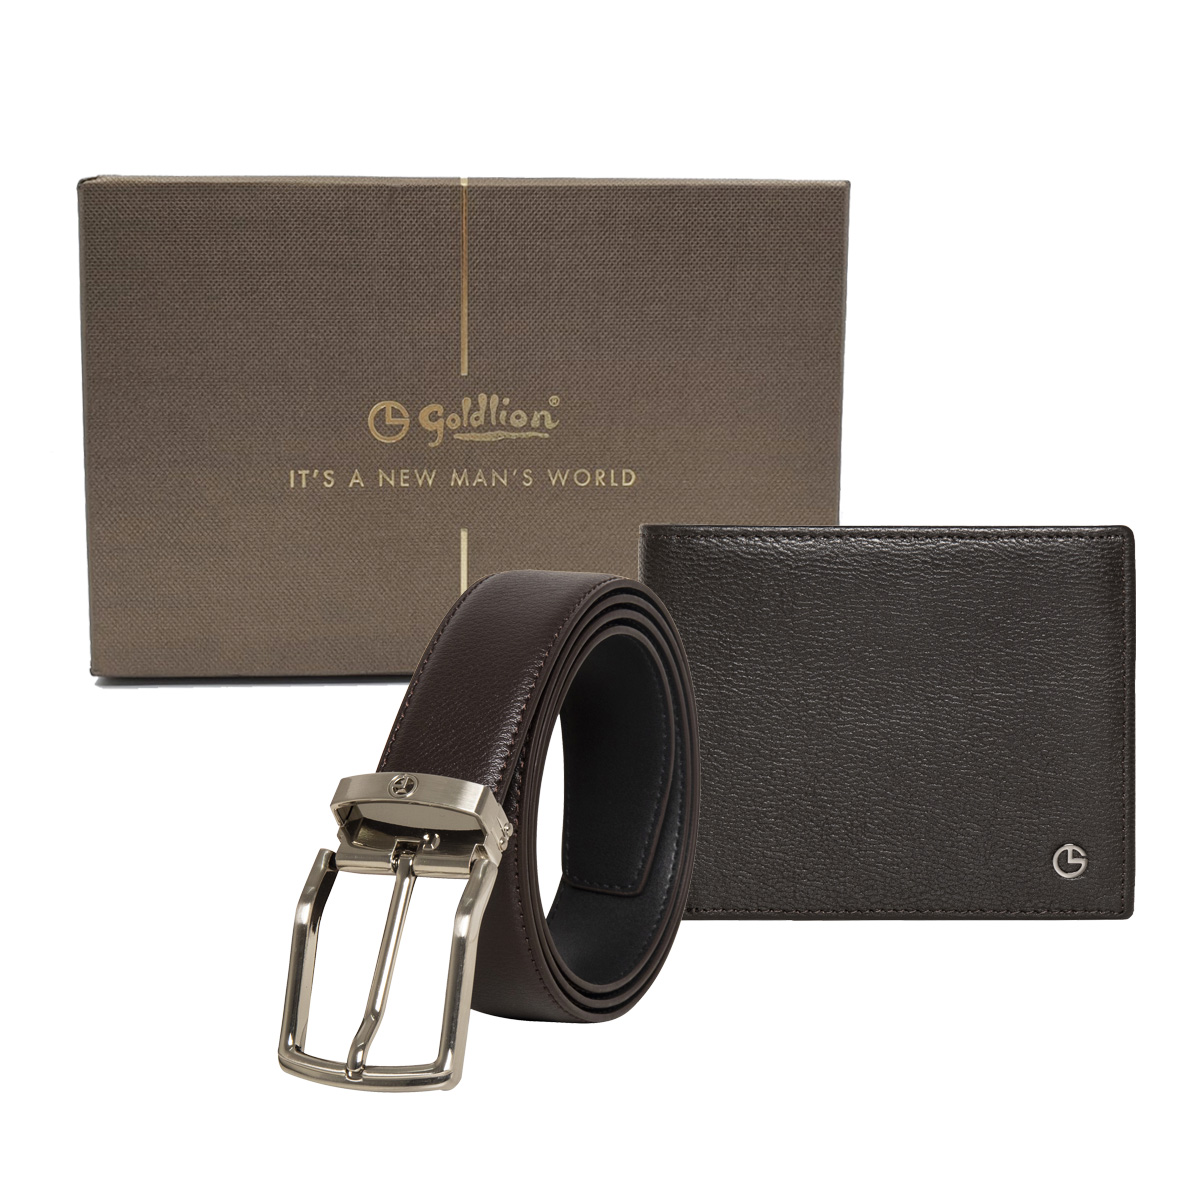 [Online Exclusive] Goldlion Genuine Leather 6 Cards Slot Wallet & Pin Belt Gift Set